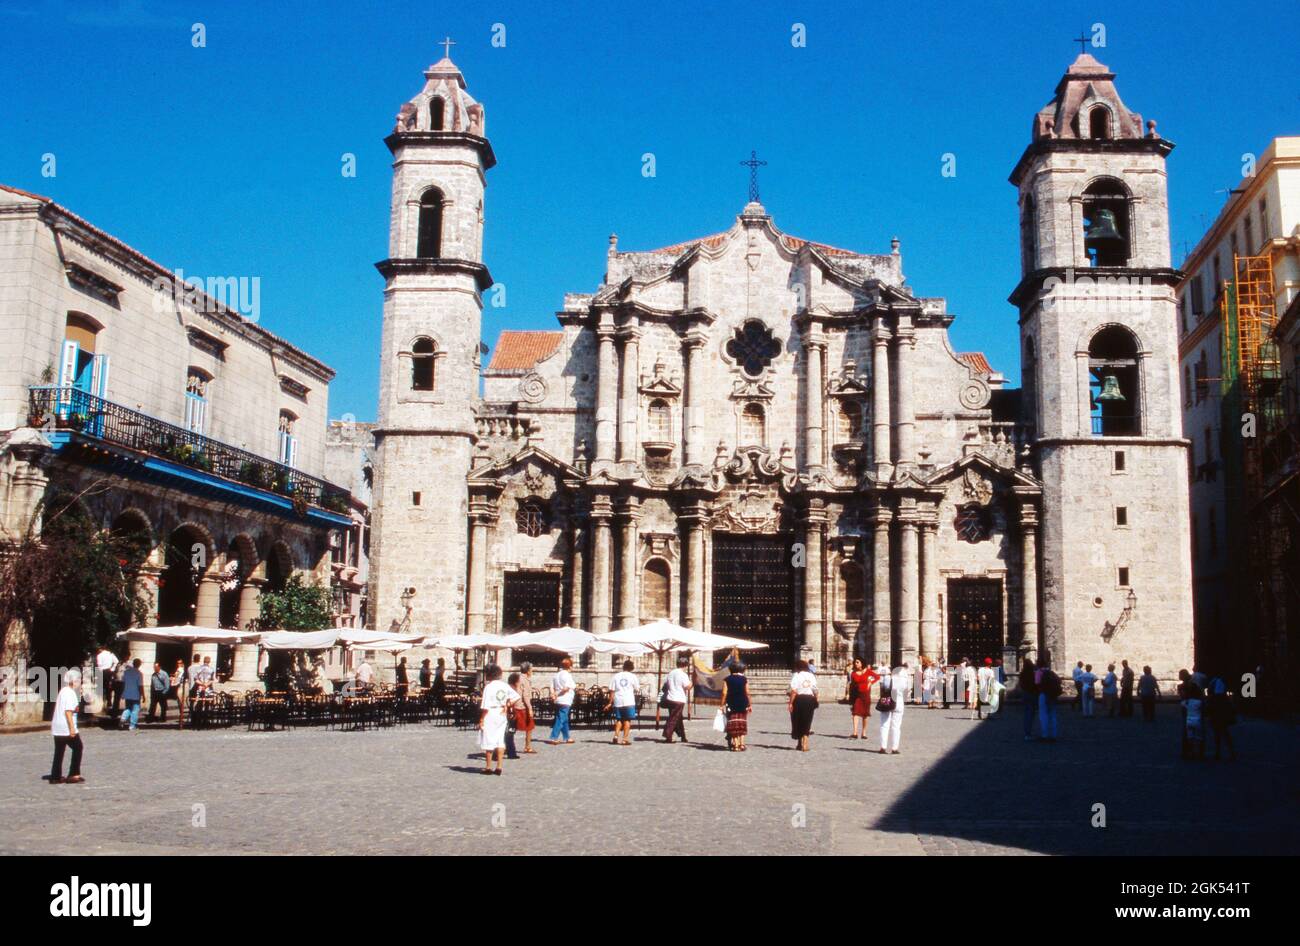 Plaza de la Catedral mit der Kathedrale San Cristobal in Havanna auf Kuba, 2000. Plaza de la Catedral avec cathédrale San Cristobal à la Havane, Cuba 2000. Banque D'Images